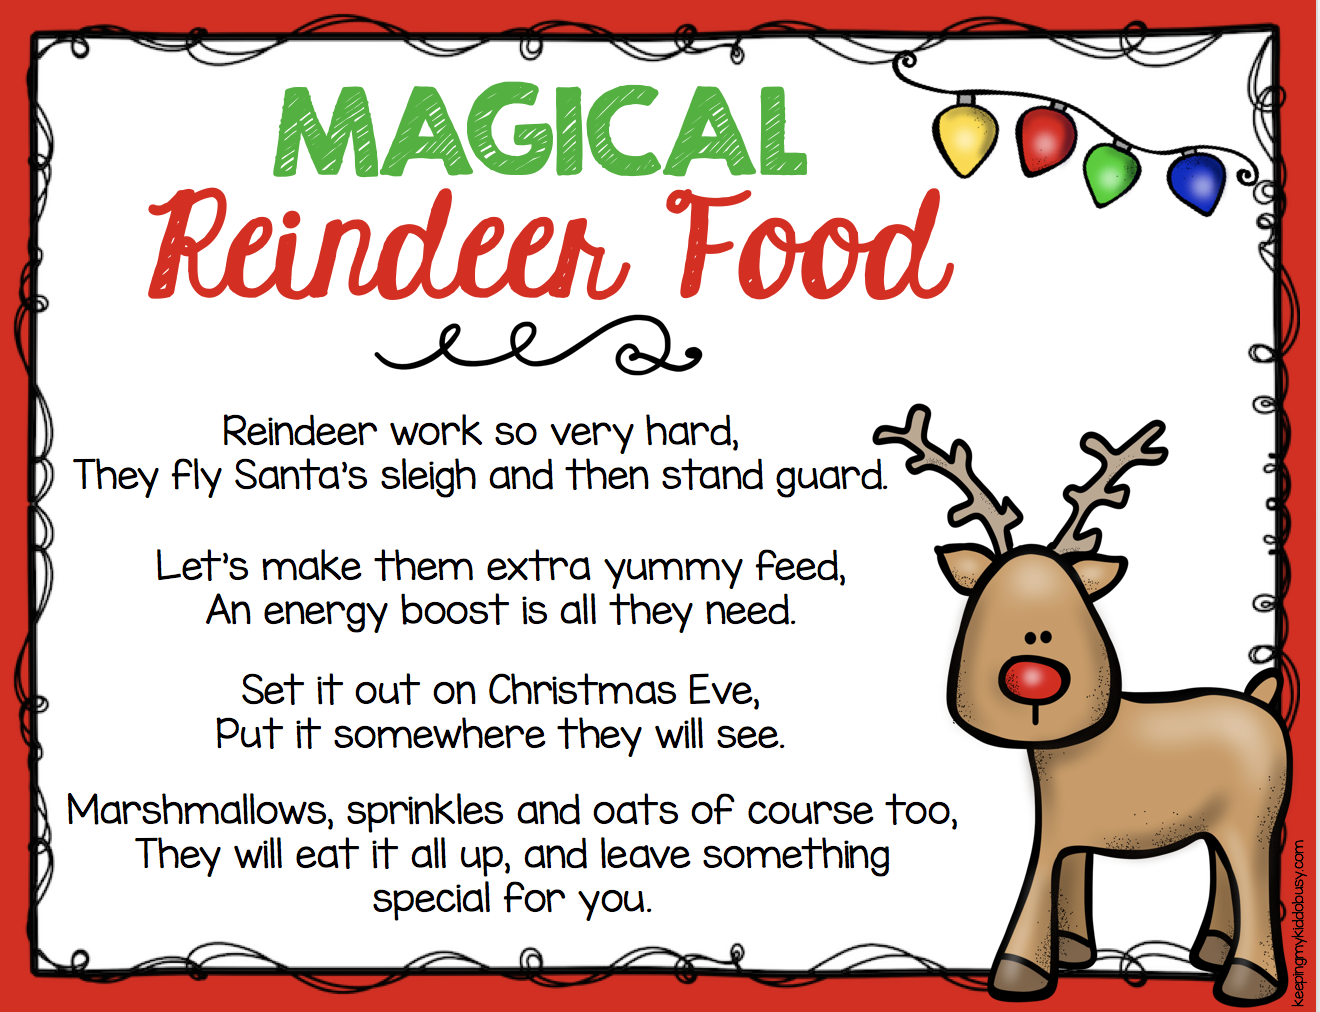 Reindeer Food Poem Printable - Use On Your Own Reindeer Food